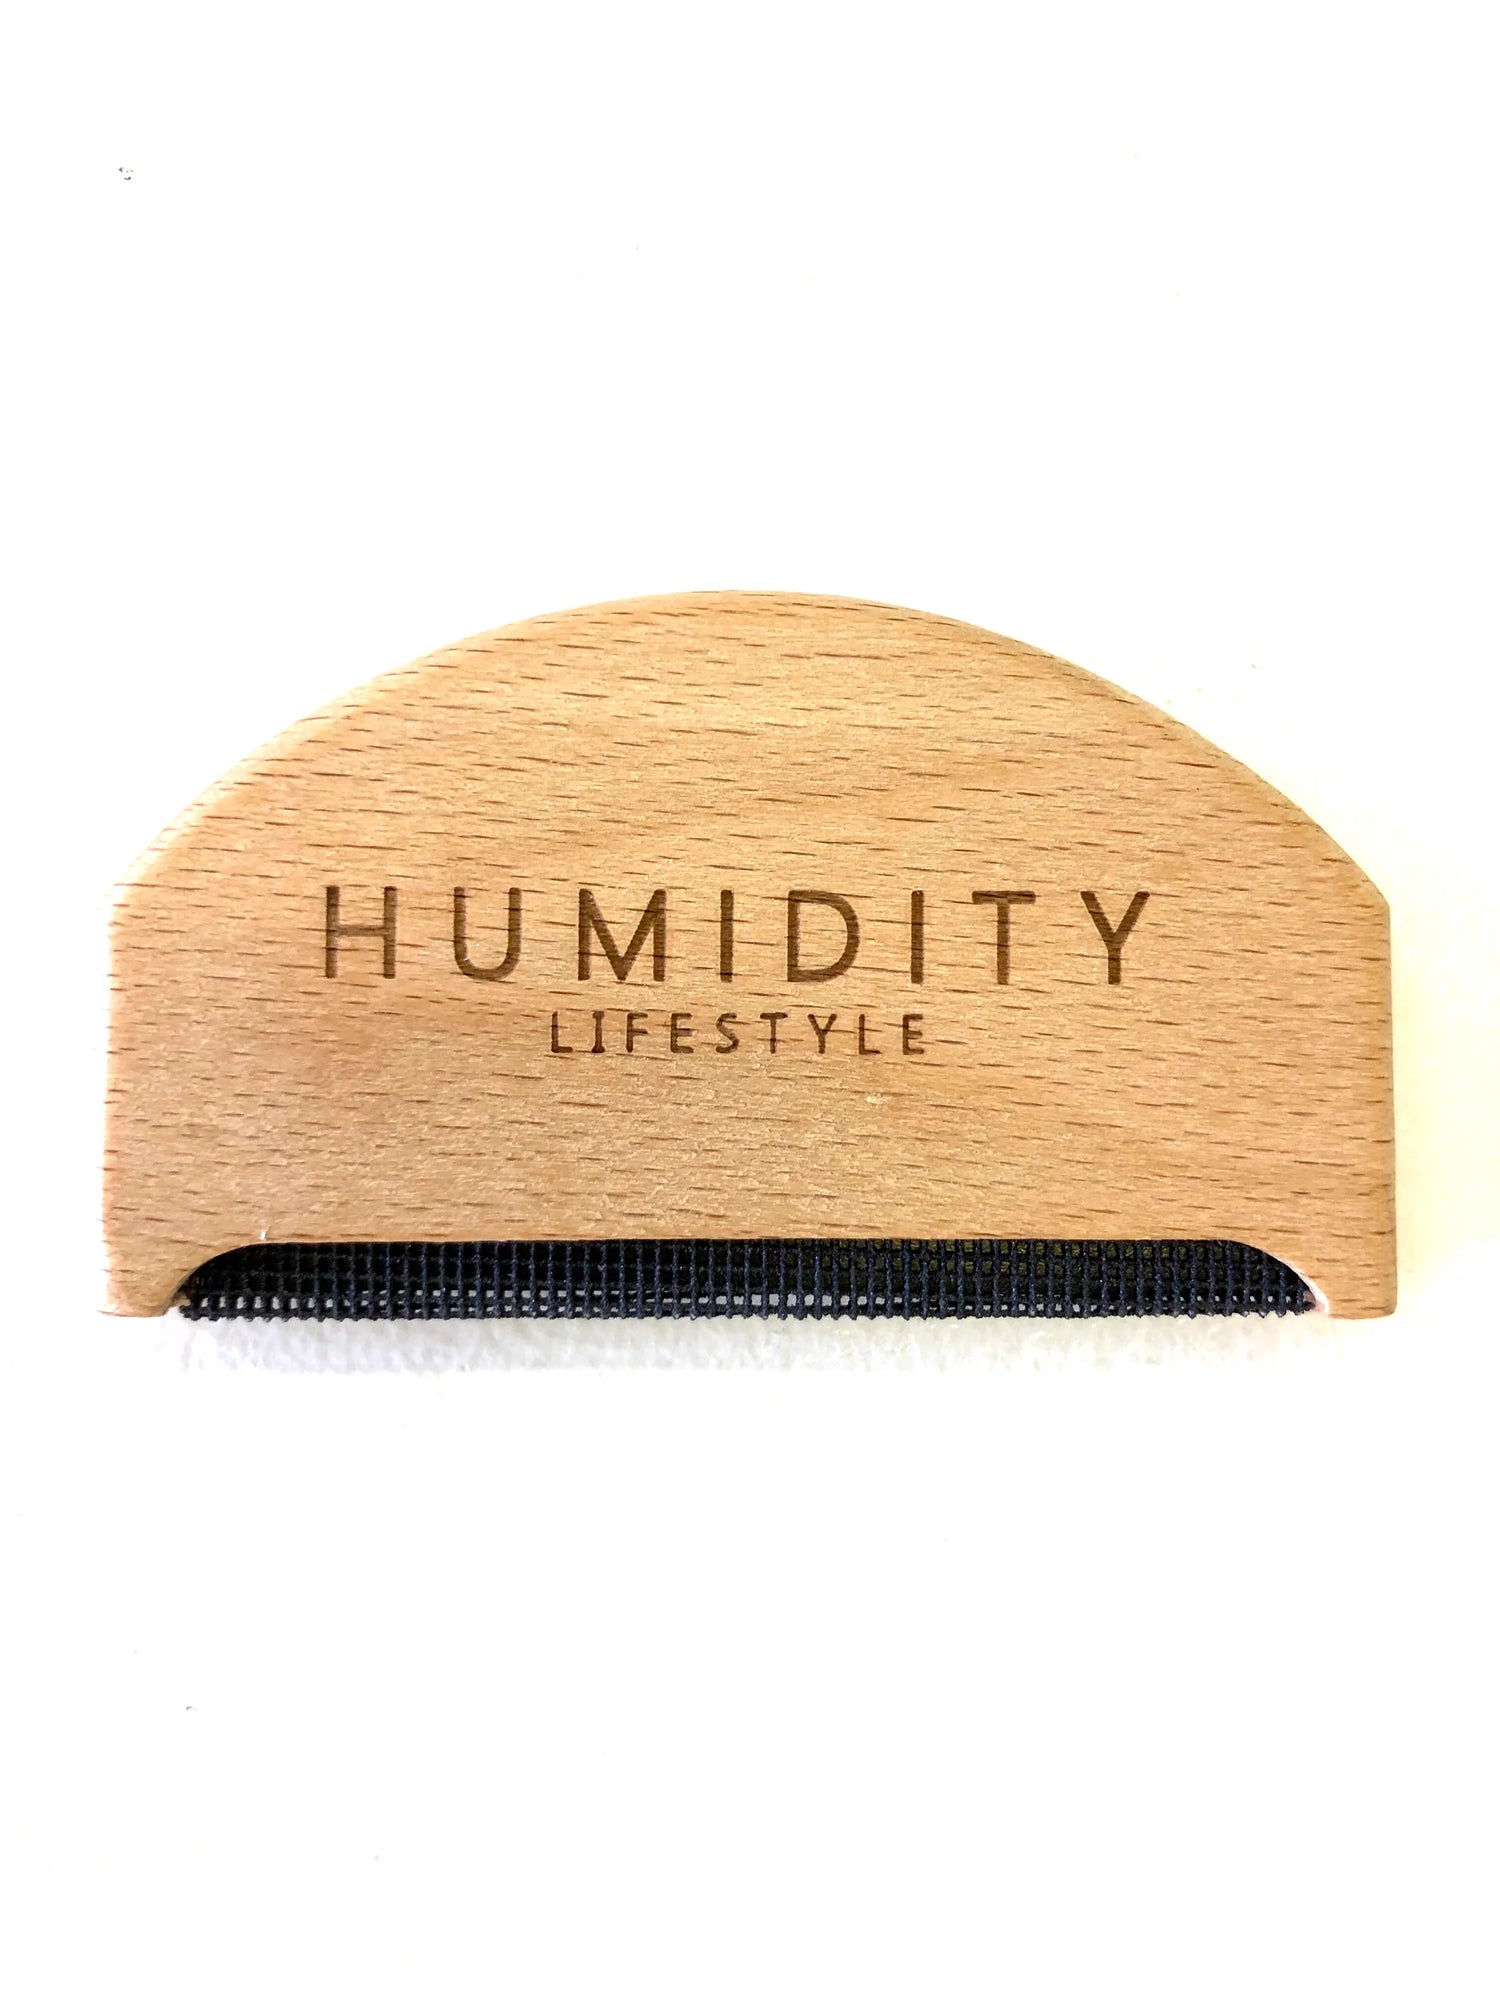 HUMIDITY